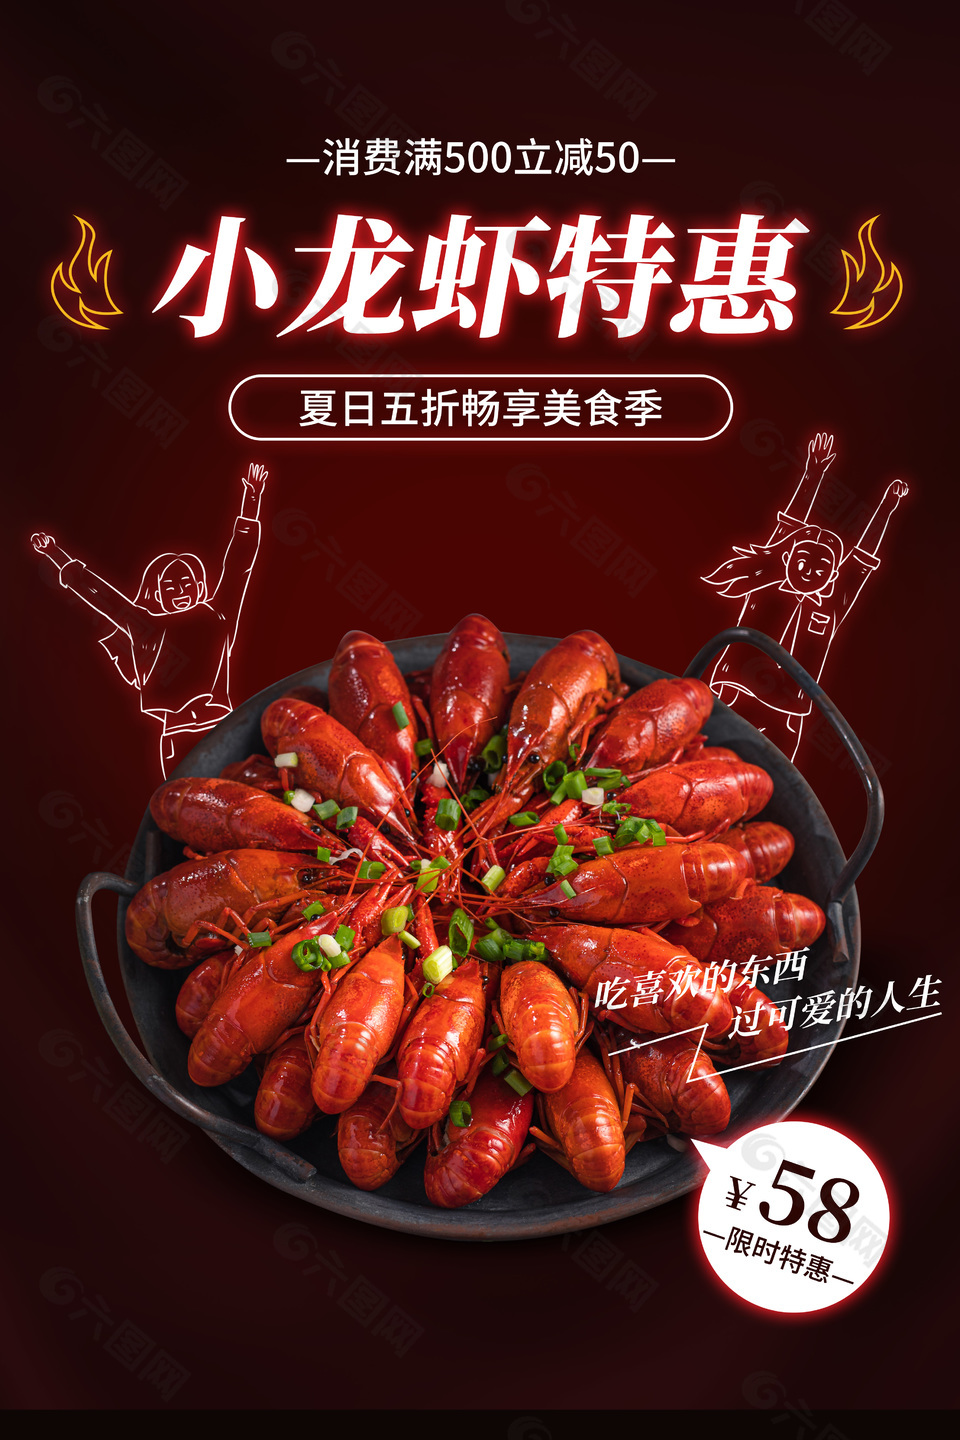 简约夏日美食季小龙虾特惠海报素材下载